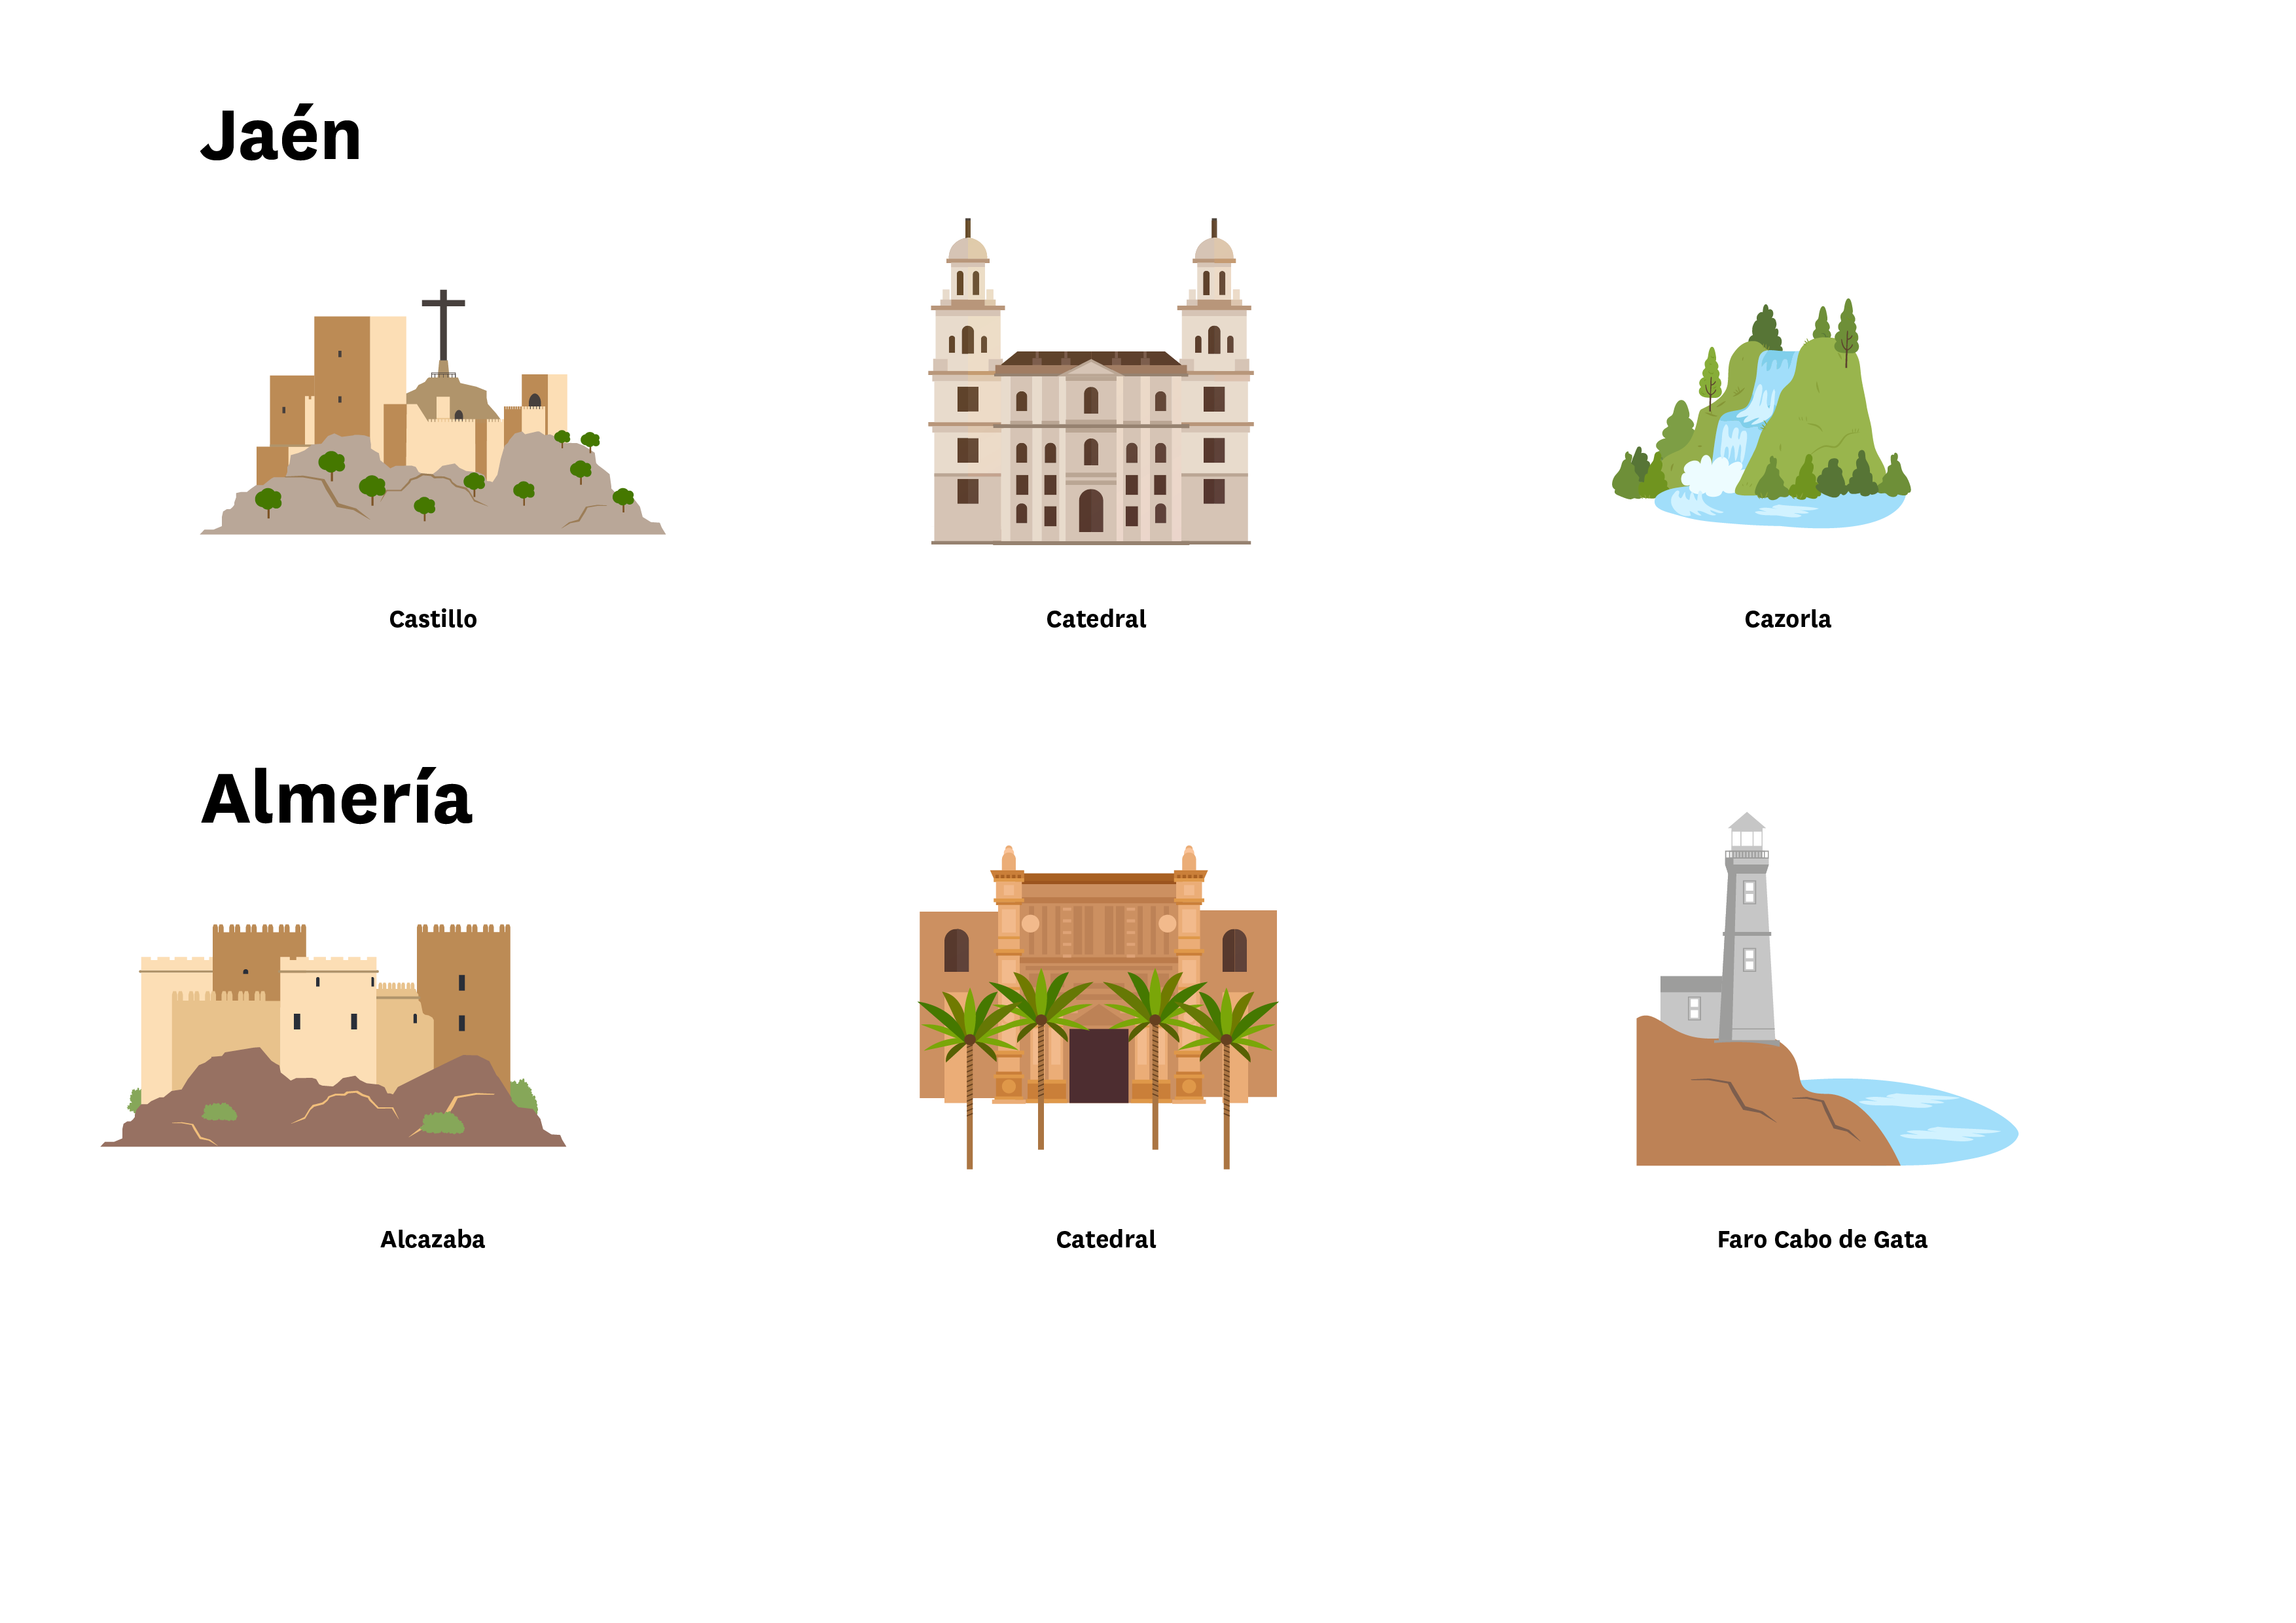 La imagen muestra localizaciones de Almería (Alcabaza, Catedral y Faro del Cabo de Gata) y de Jaén (Castillo, Catedral y Cazorla)